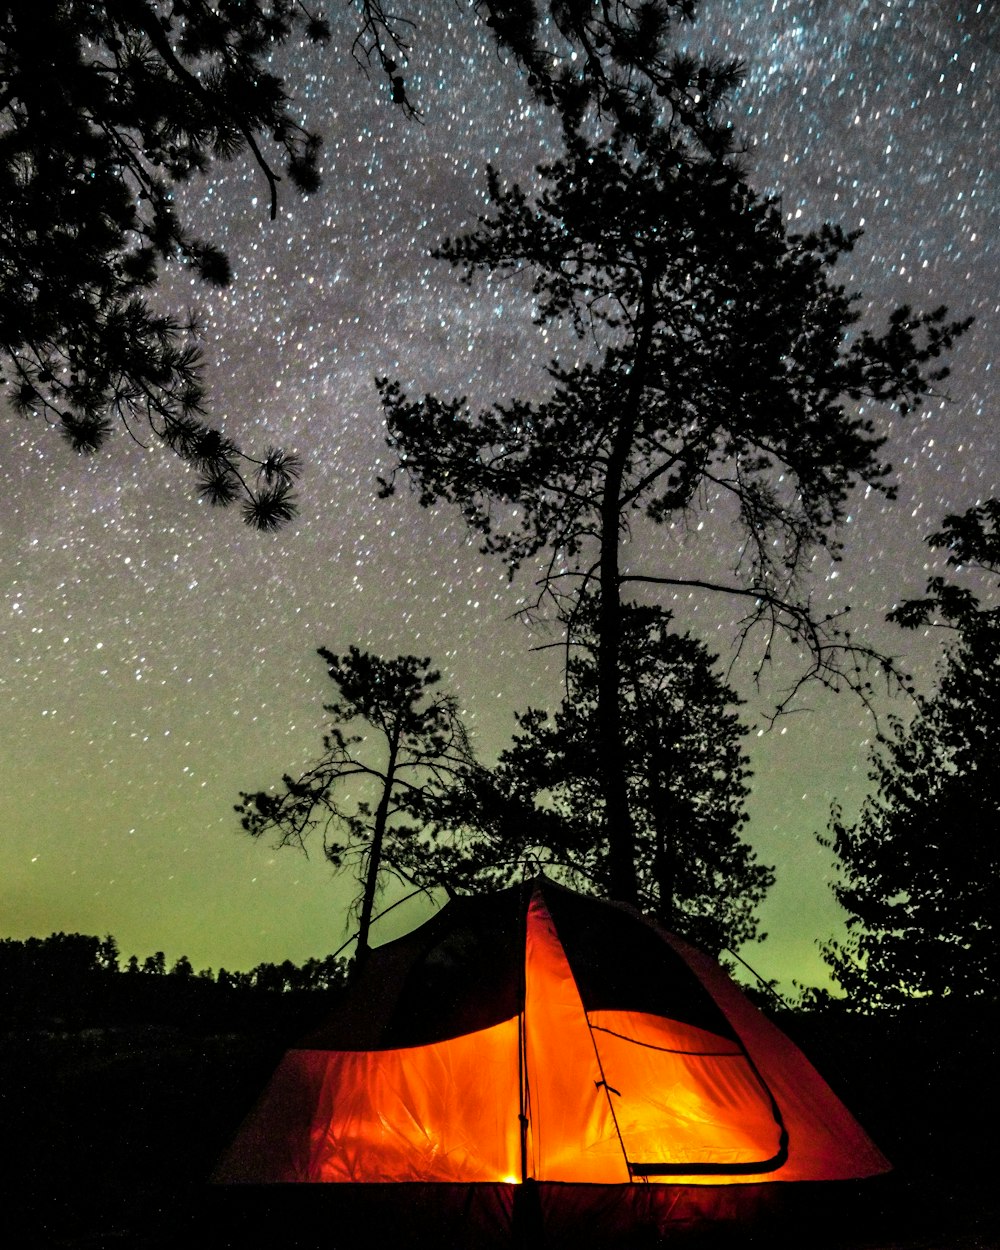 foto della silhouette dell'albero accanto alla tenda arancione e nera durante la notte stellata